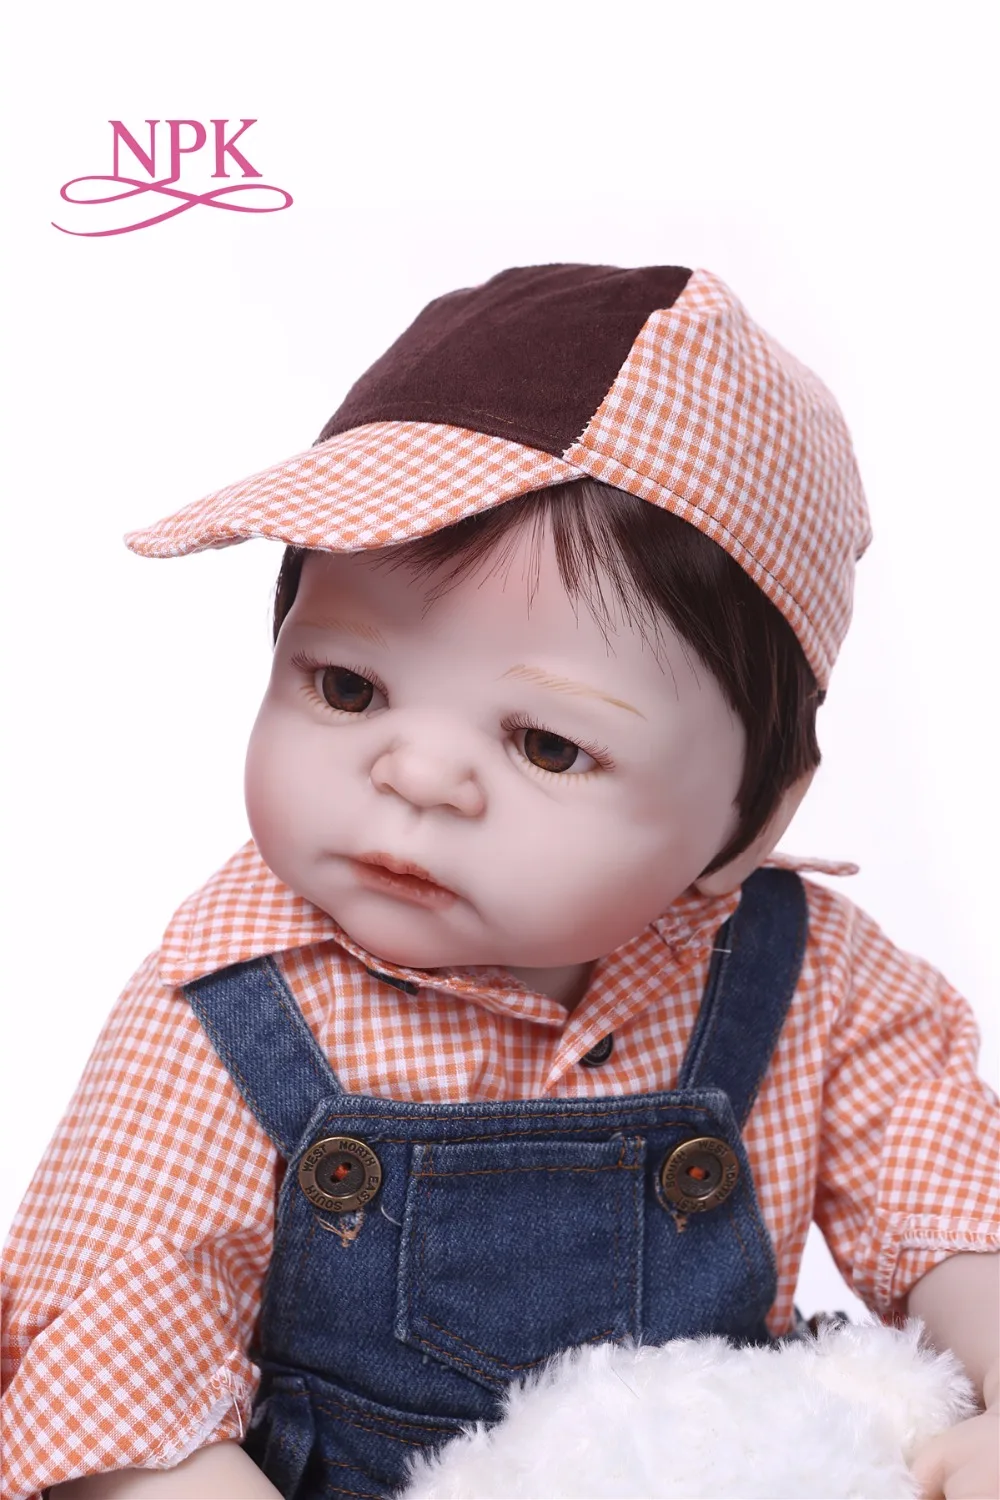 NPK Boneca Reborn консервативный стиль полный винил Reborn Baby Doll игрушки Реалистичные ребенка день рождения Рождество подарок Горячие Игрушки для